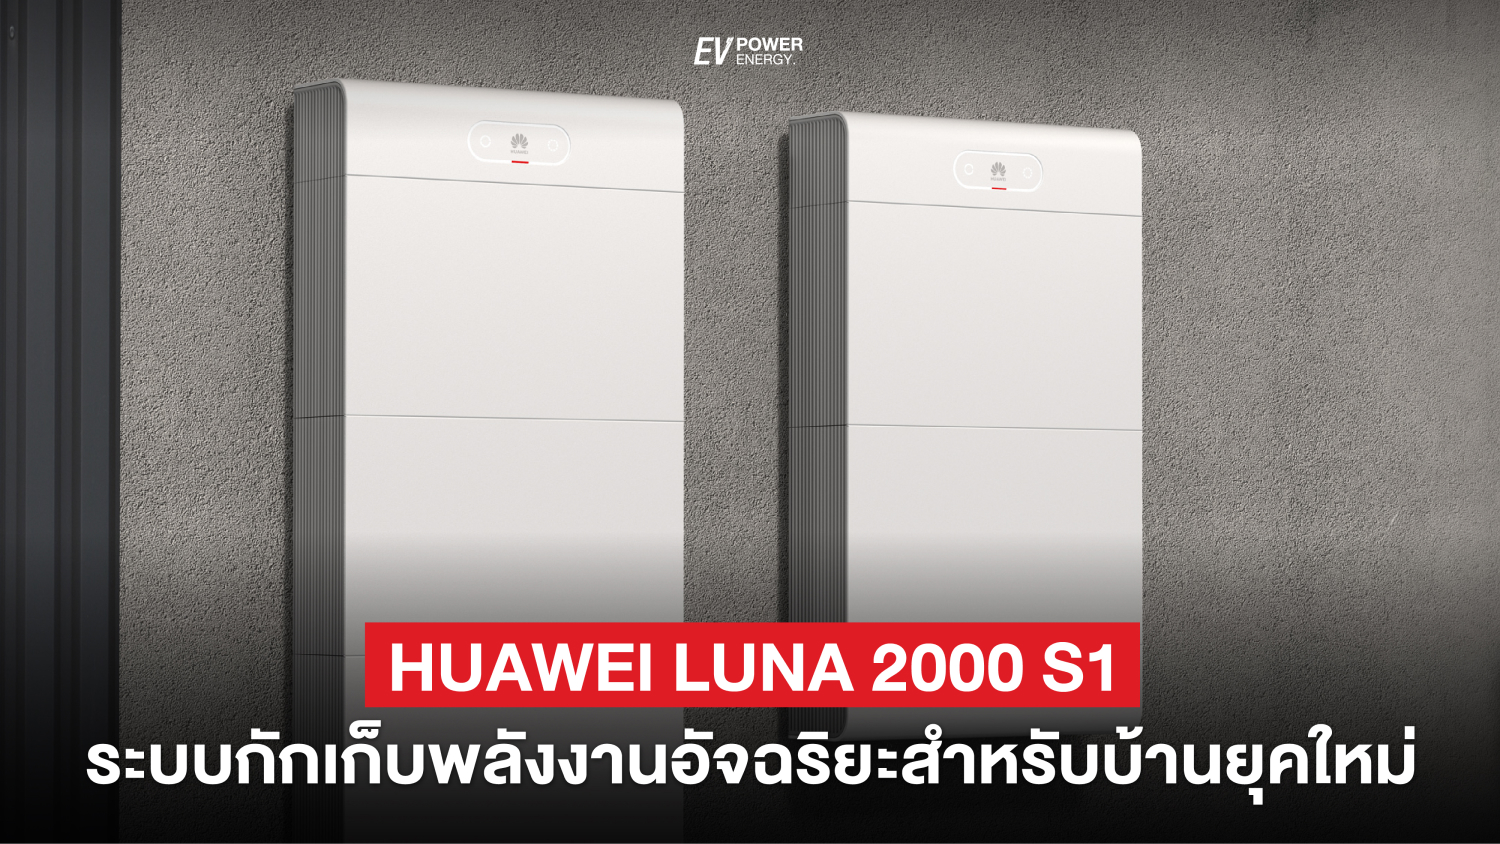 Huawei LUNA 2000 S1 แบตเตอรี่ อัจฉริยะ สำหรับบ้าน ยุคใหม่